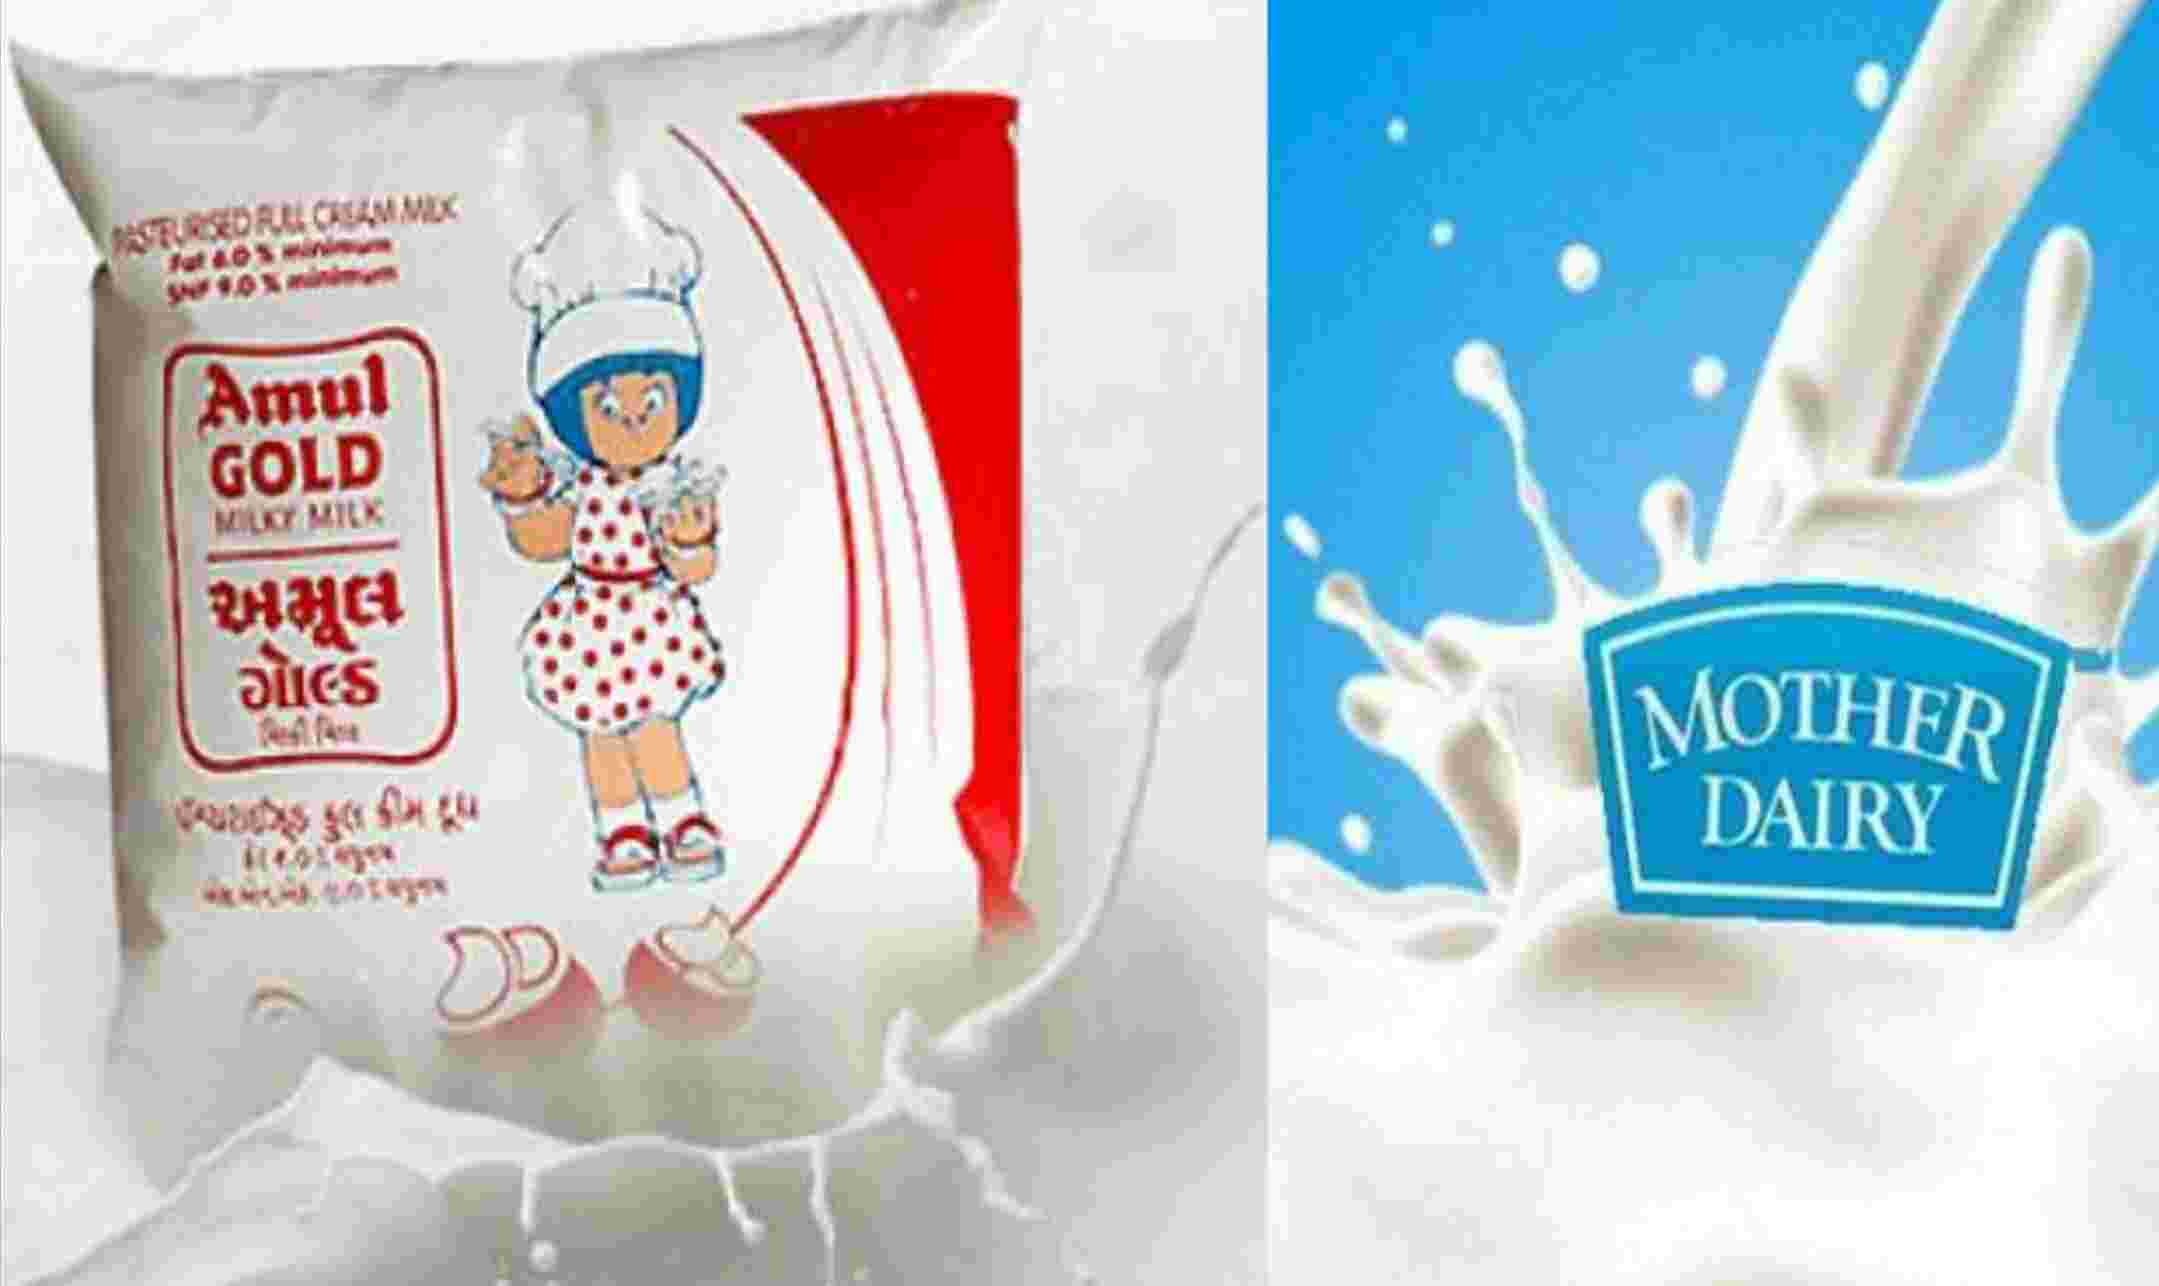 Amul Milk Price Hike: दिवाली से पहले महंगाई का एक और झटका, अमूल ने बढ़ा दिए दूध के दाम, जानें नए रेट कब से होगा लागू